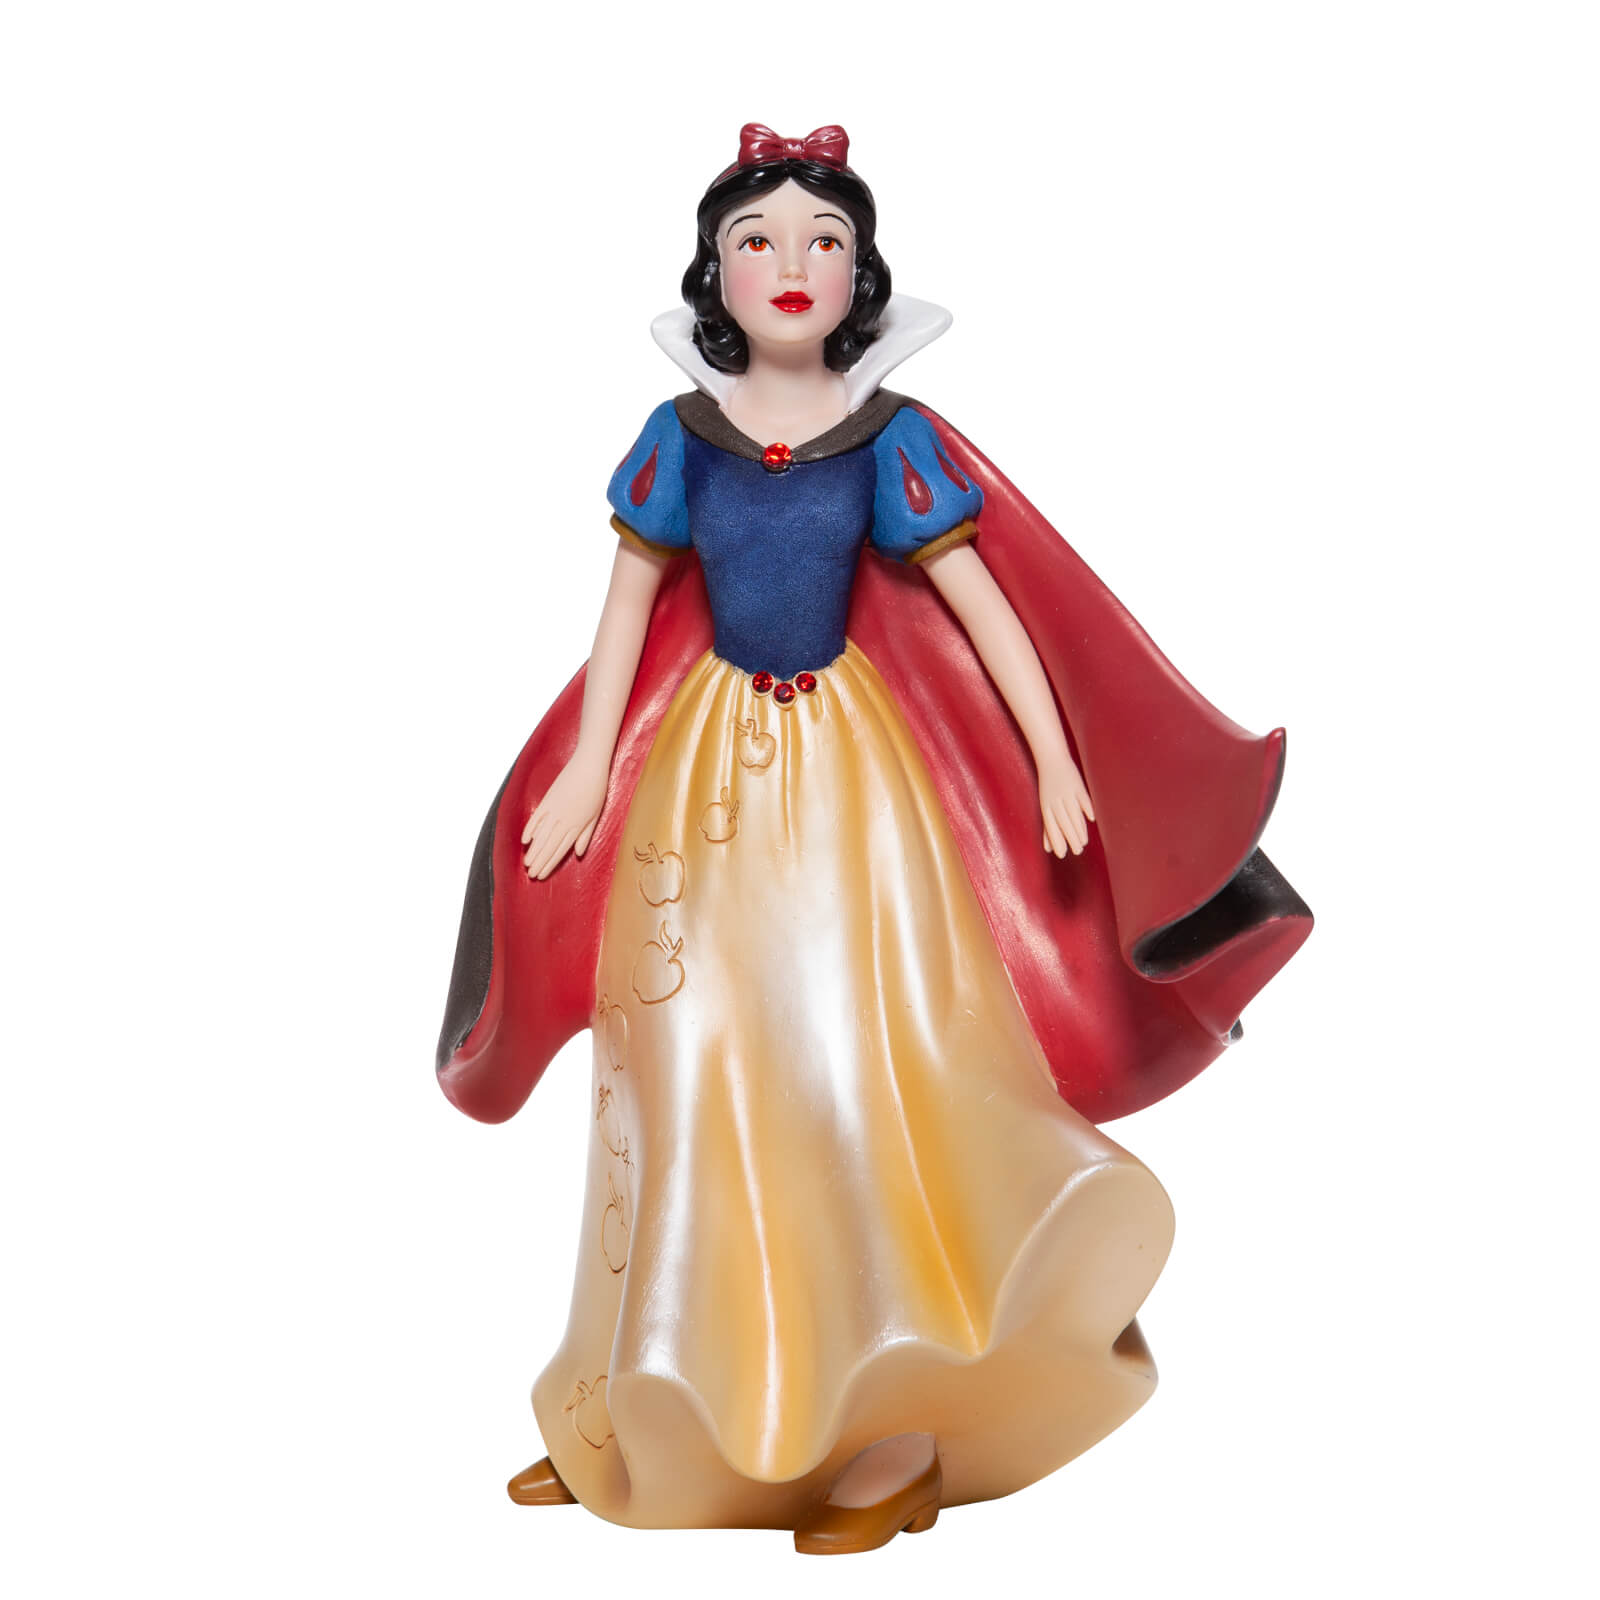 Disney Showcase Collection Snow White Fashion Figurine 19cm